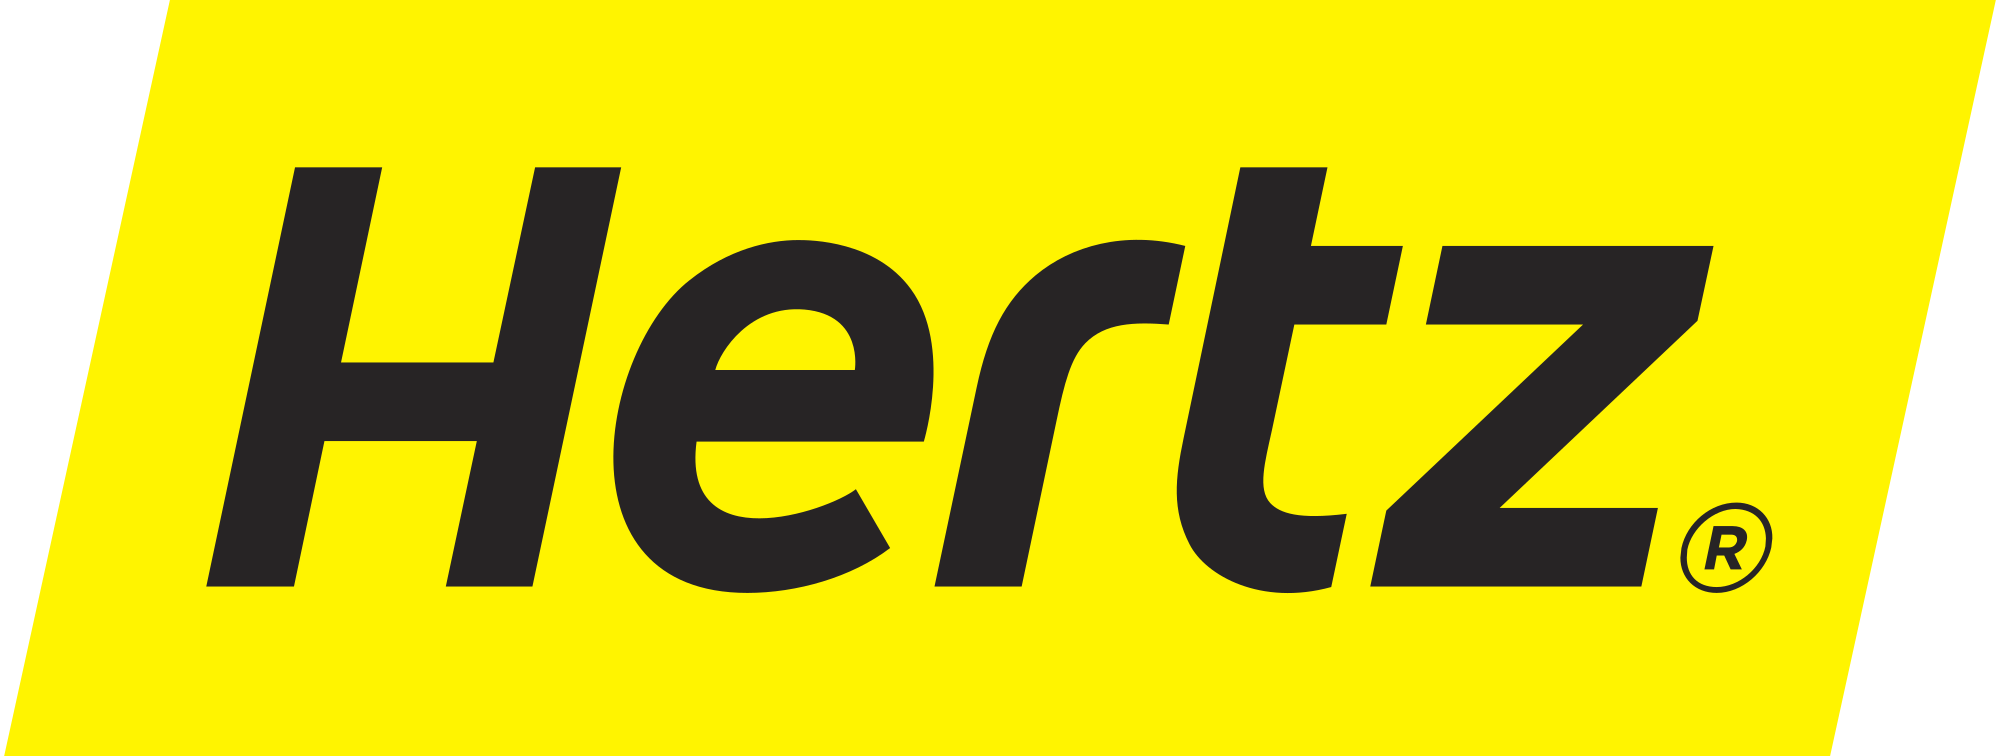 Hertz Logo - File:Hertz Logo.svg - Wikimedia Commons